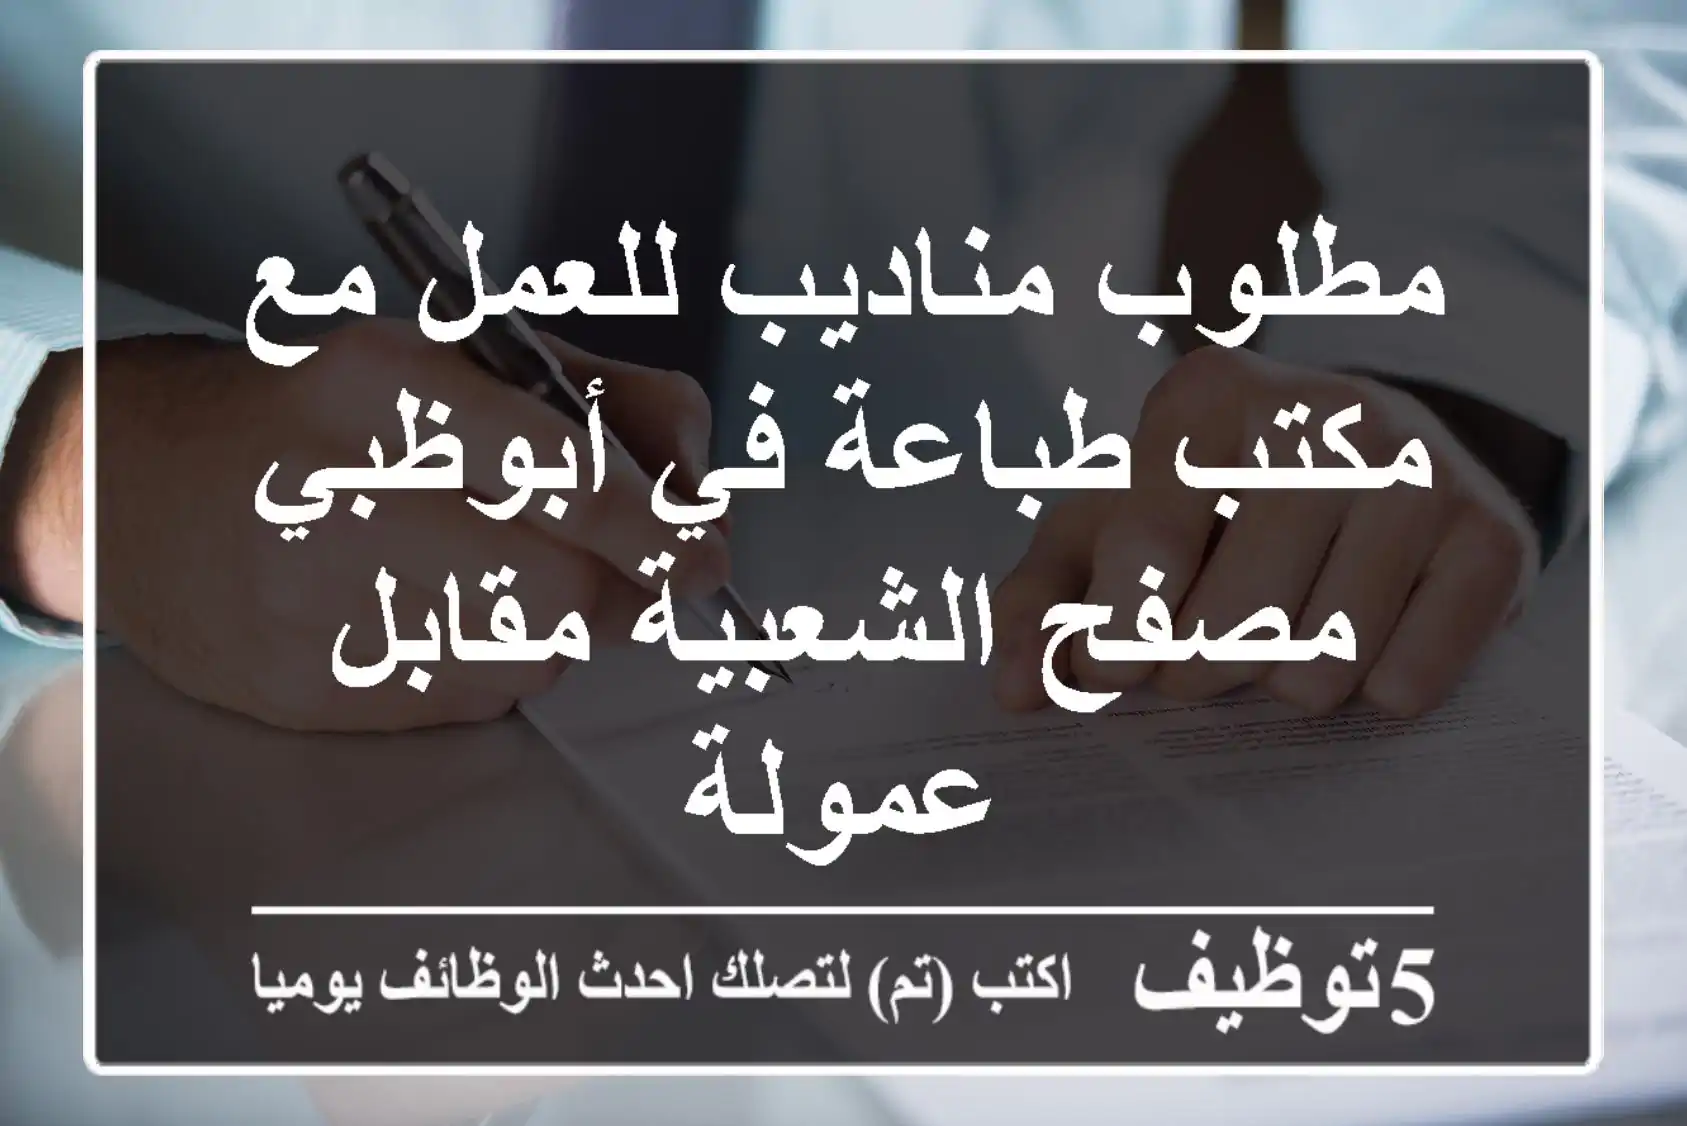 مطلوب مناديب للعمل مع مكتب طباعة في أبوظبي مصفح الشعبية مقابل عمولة